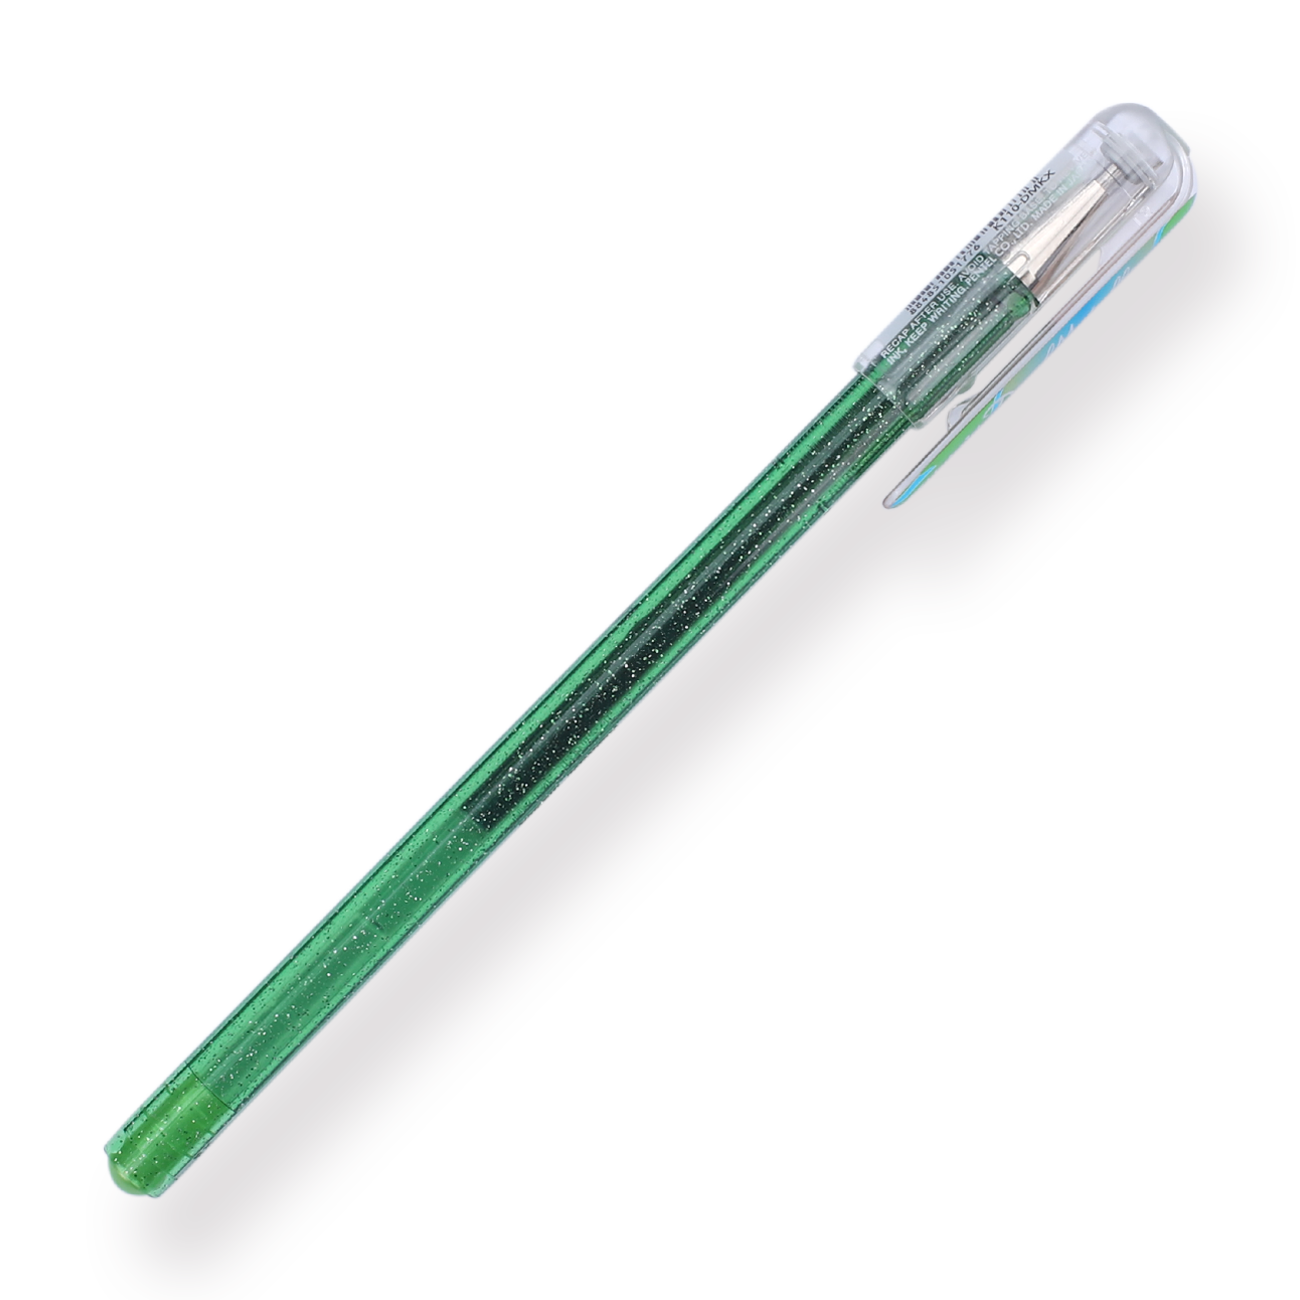 Pentel Hybrid Dual Metallic Liquid Gel Roller Mellow Color Series - 1.0mm - Light Green + Metallic Blue & Red